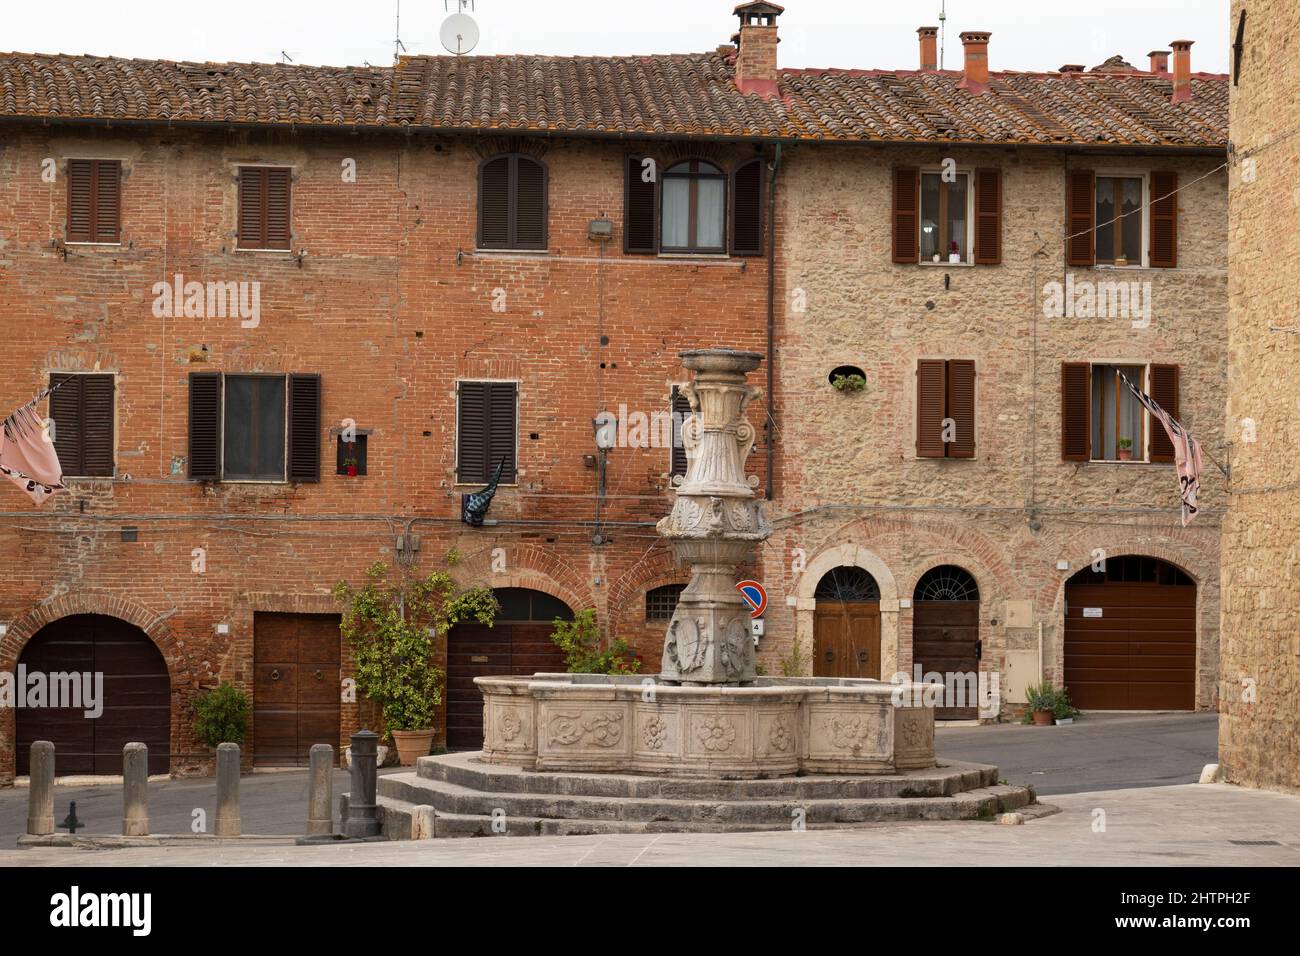 Ancient fountain of Piazza del Grano, Asciano village, Crete Senesi area, Siena province, Tuscany, Europe Stock Photo